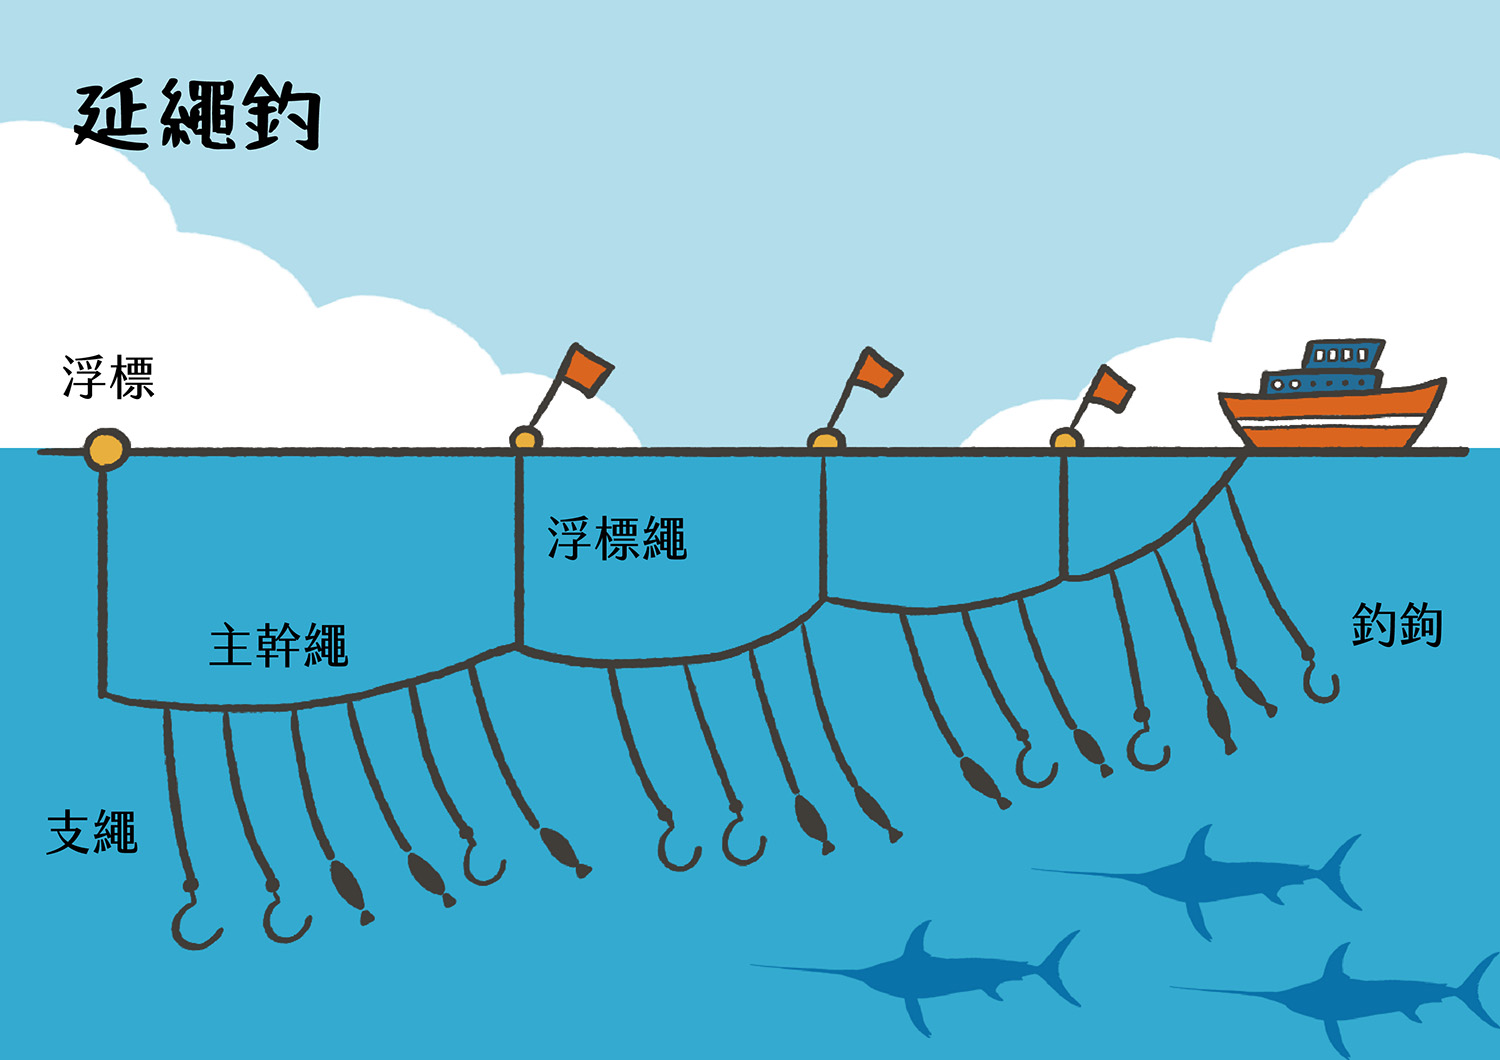 延繩釣的原則是願者上鉤，是友善海洋的漁法之一。